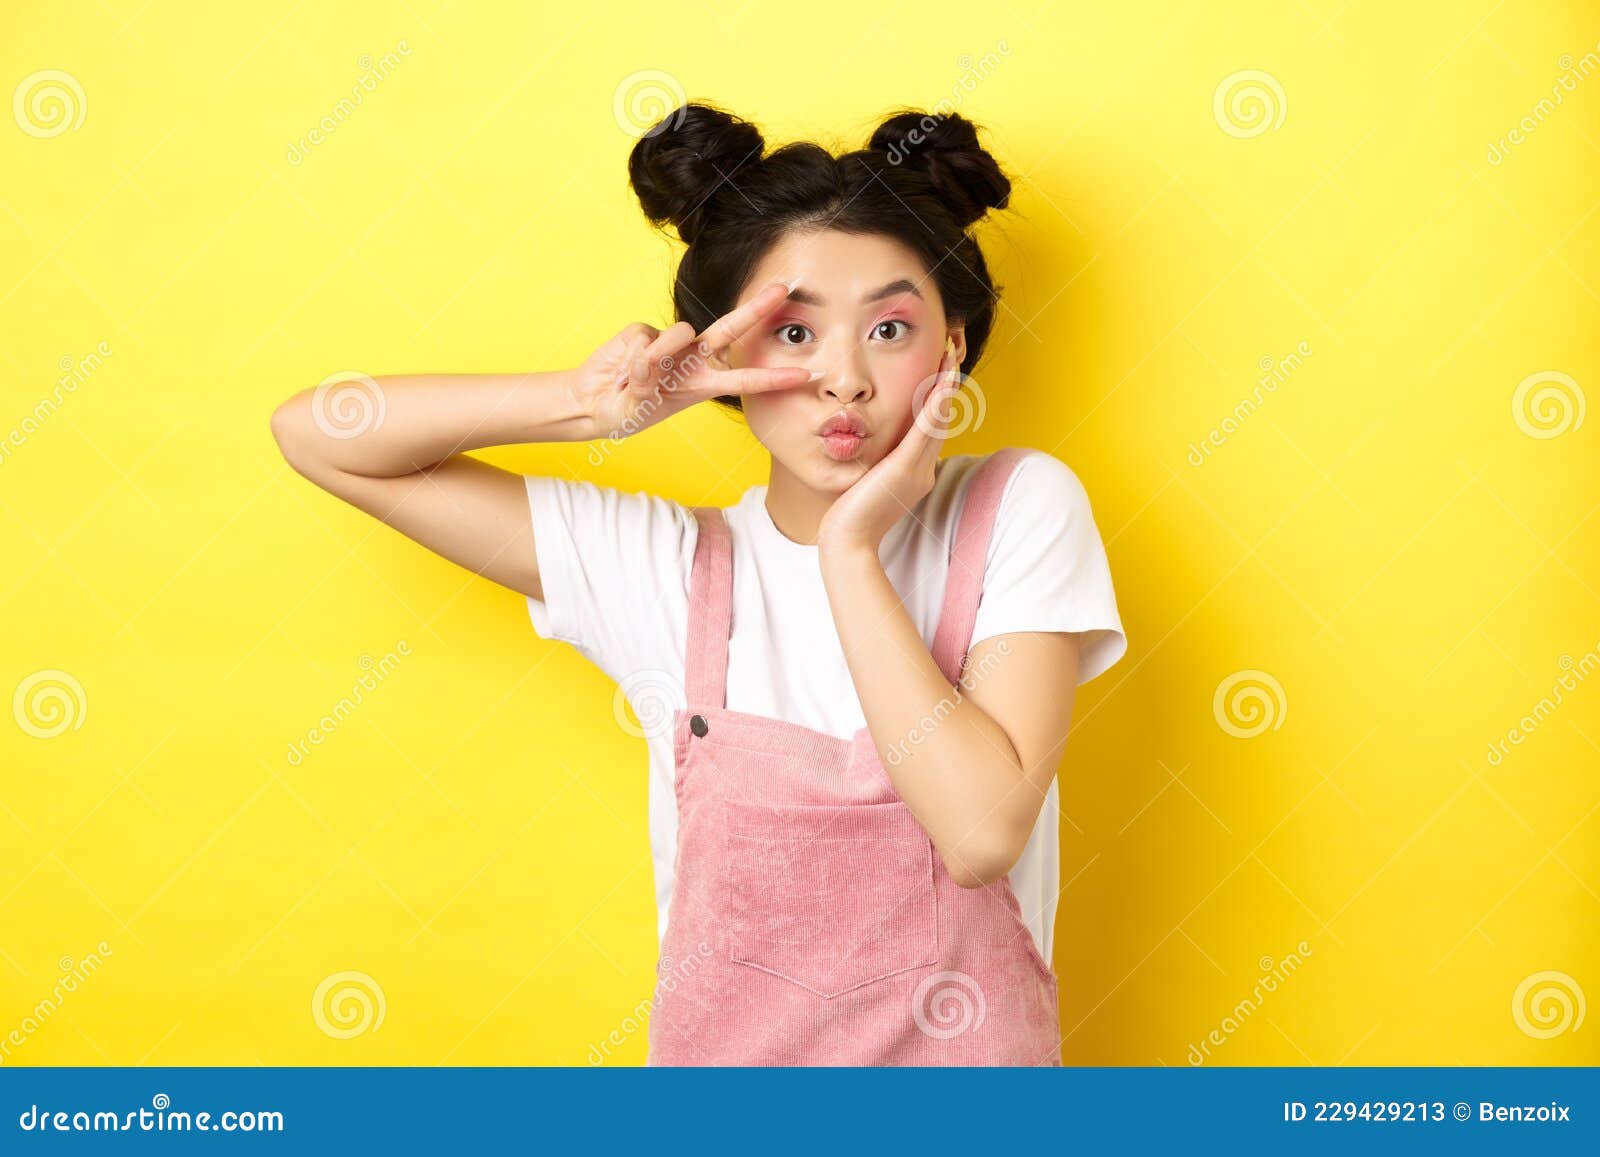 Kawaii Asiatique Jeune Fille Montrant Des Signes Et Des Pousses Mignonnes  Faisant Un Visage Idiot Avec Maquillage Debout Sur Fond Image stock - Image  du heureux, lumineux: 229429213